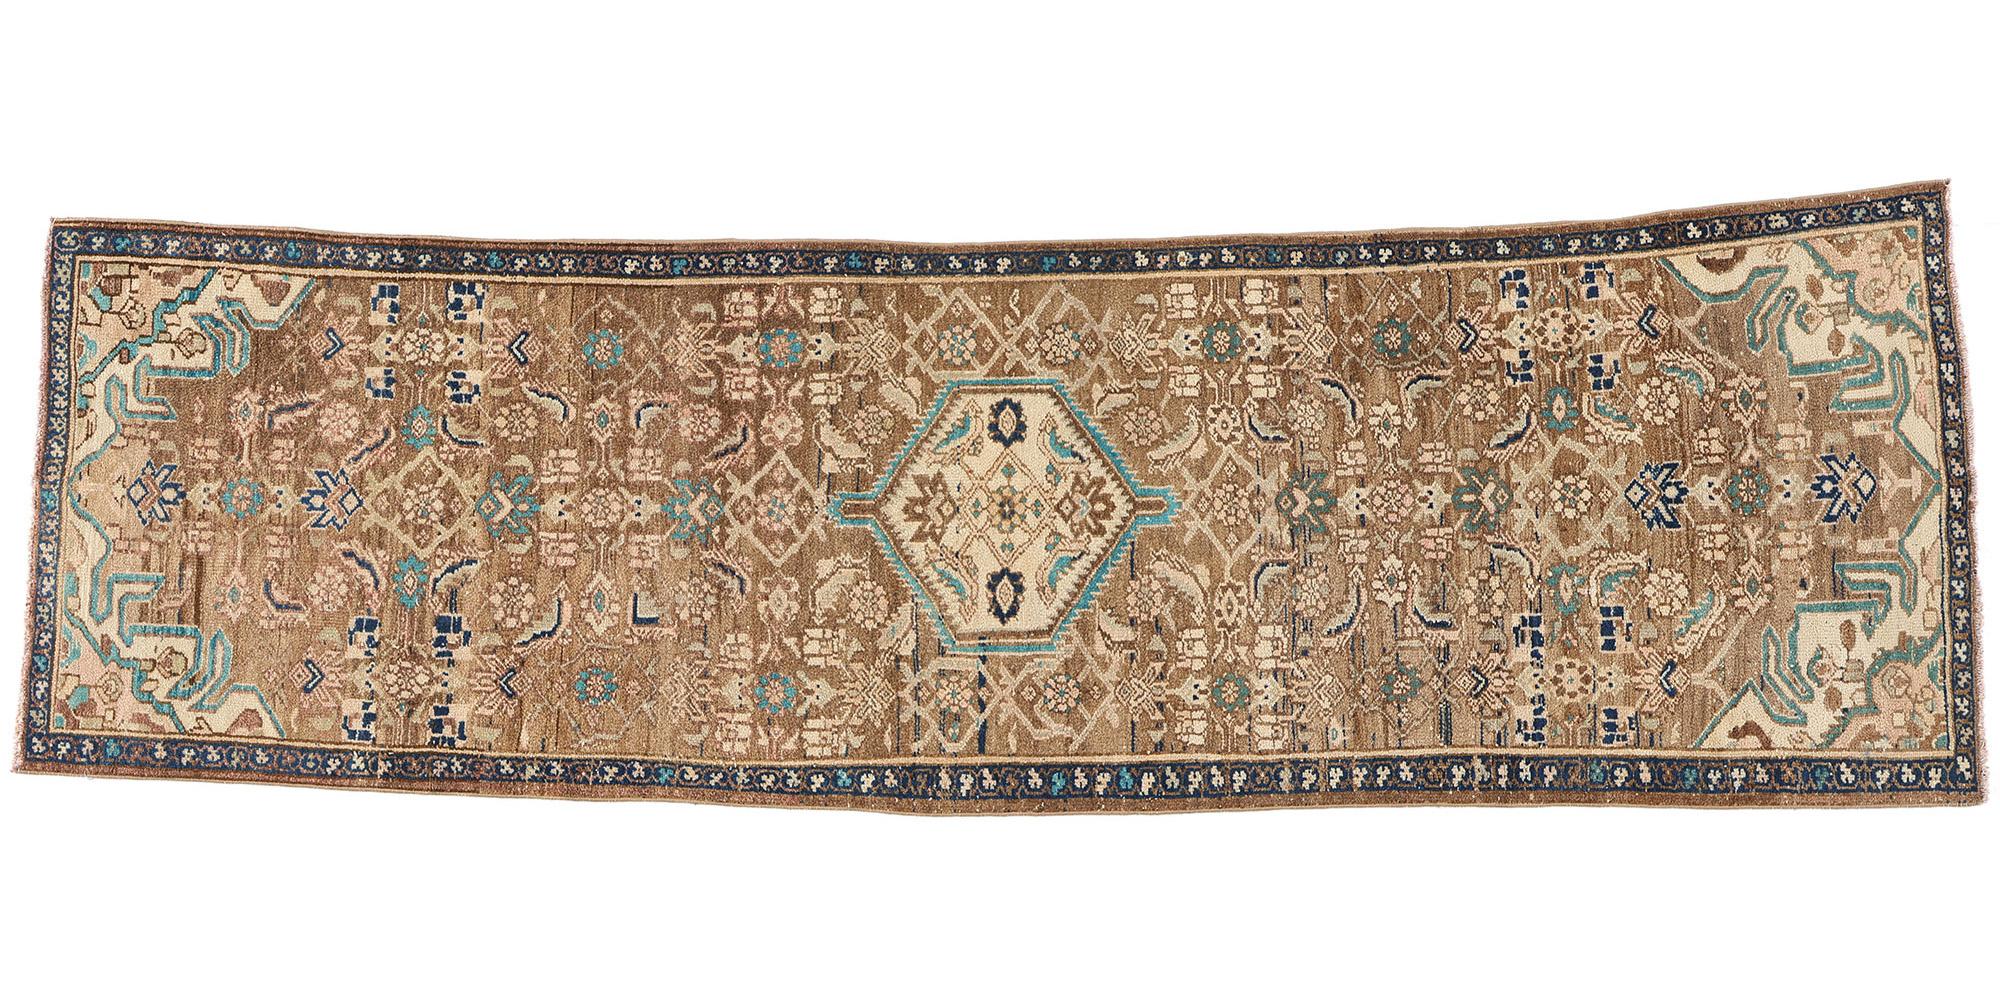 Vintage Persian Hamadan Rug Carpet Runner, Brown Pink Aqua For Sale 3